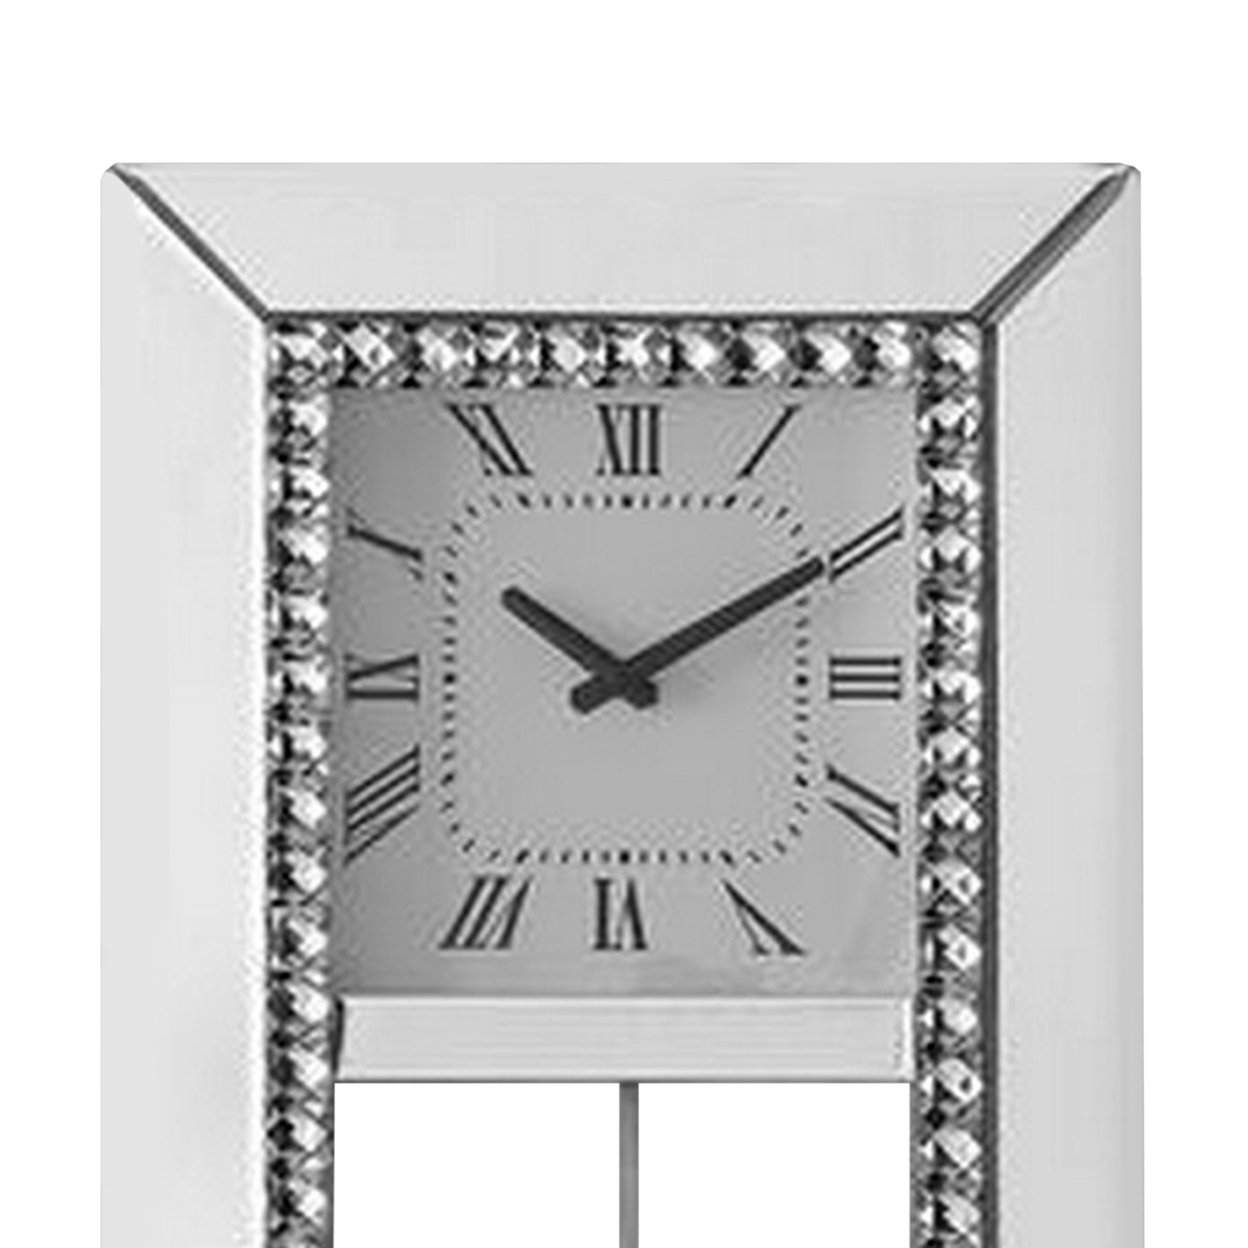 Noe 30 Inch Wall Clock, Crystal Diamond Inlaid Trim, Pendulum, White- Saltoro Sherpi